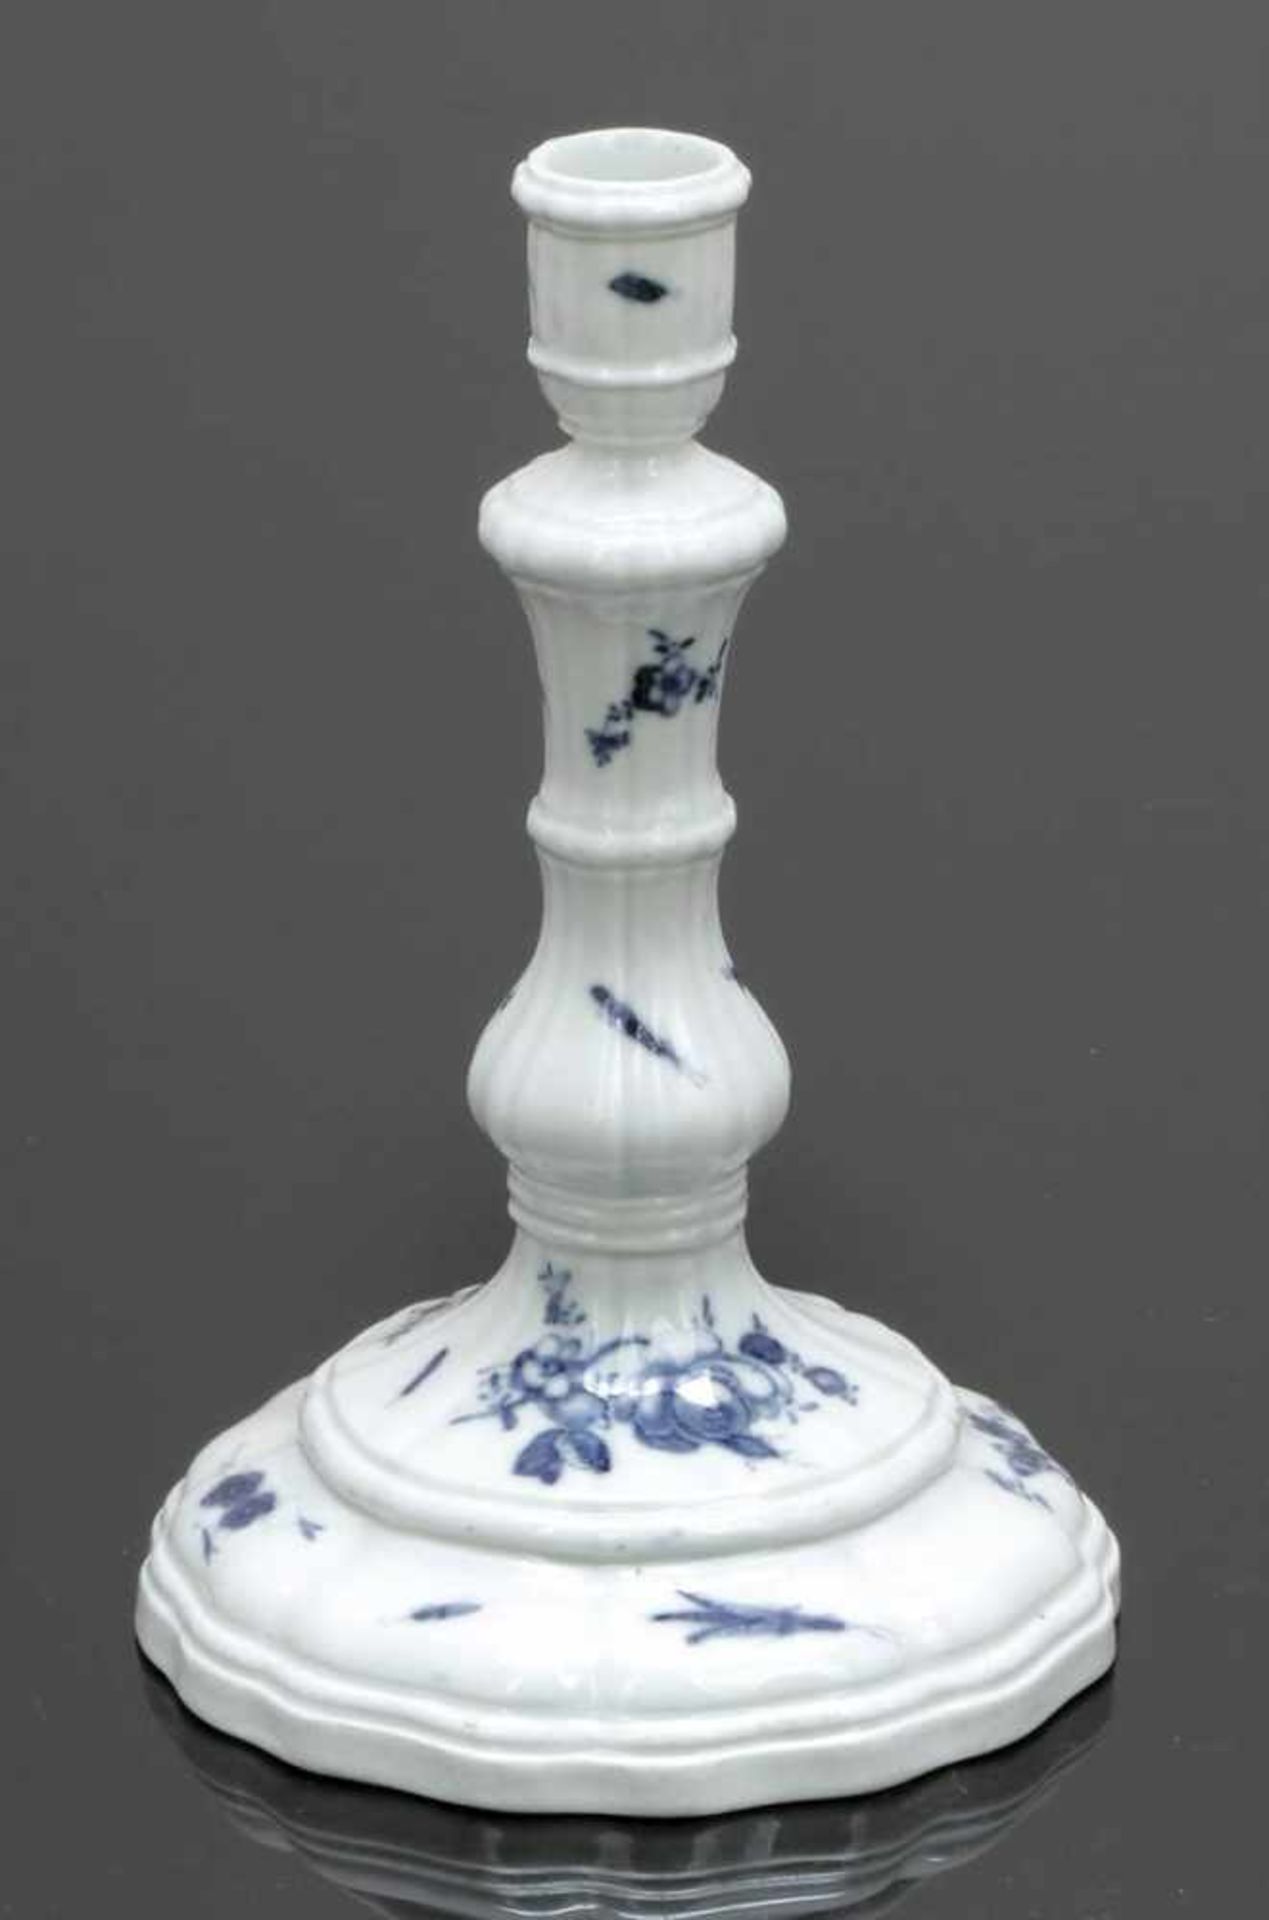 TischleuchterMeissen, um 1760. - Blaue Blume mit Insekten - Porzellan, weiß, glasiert. Unter der